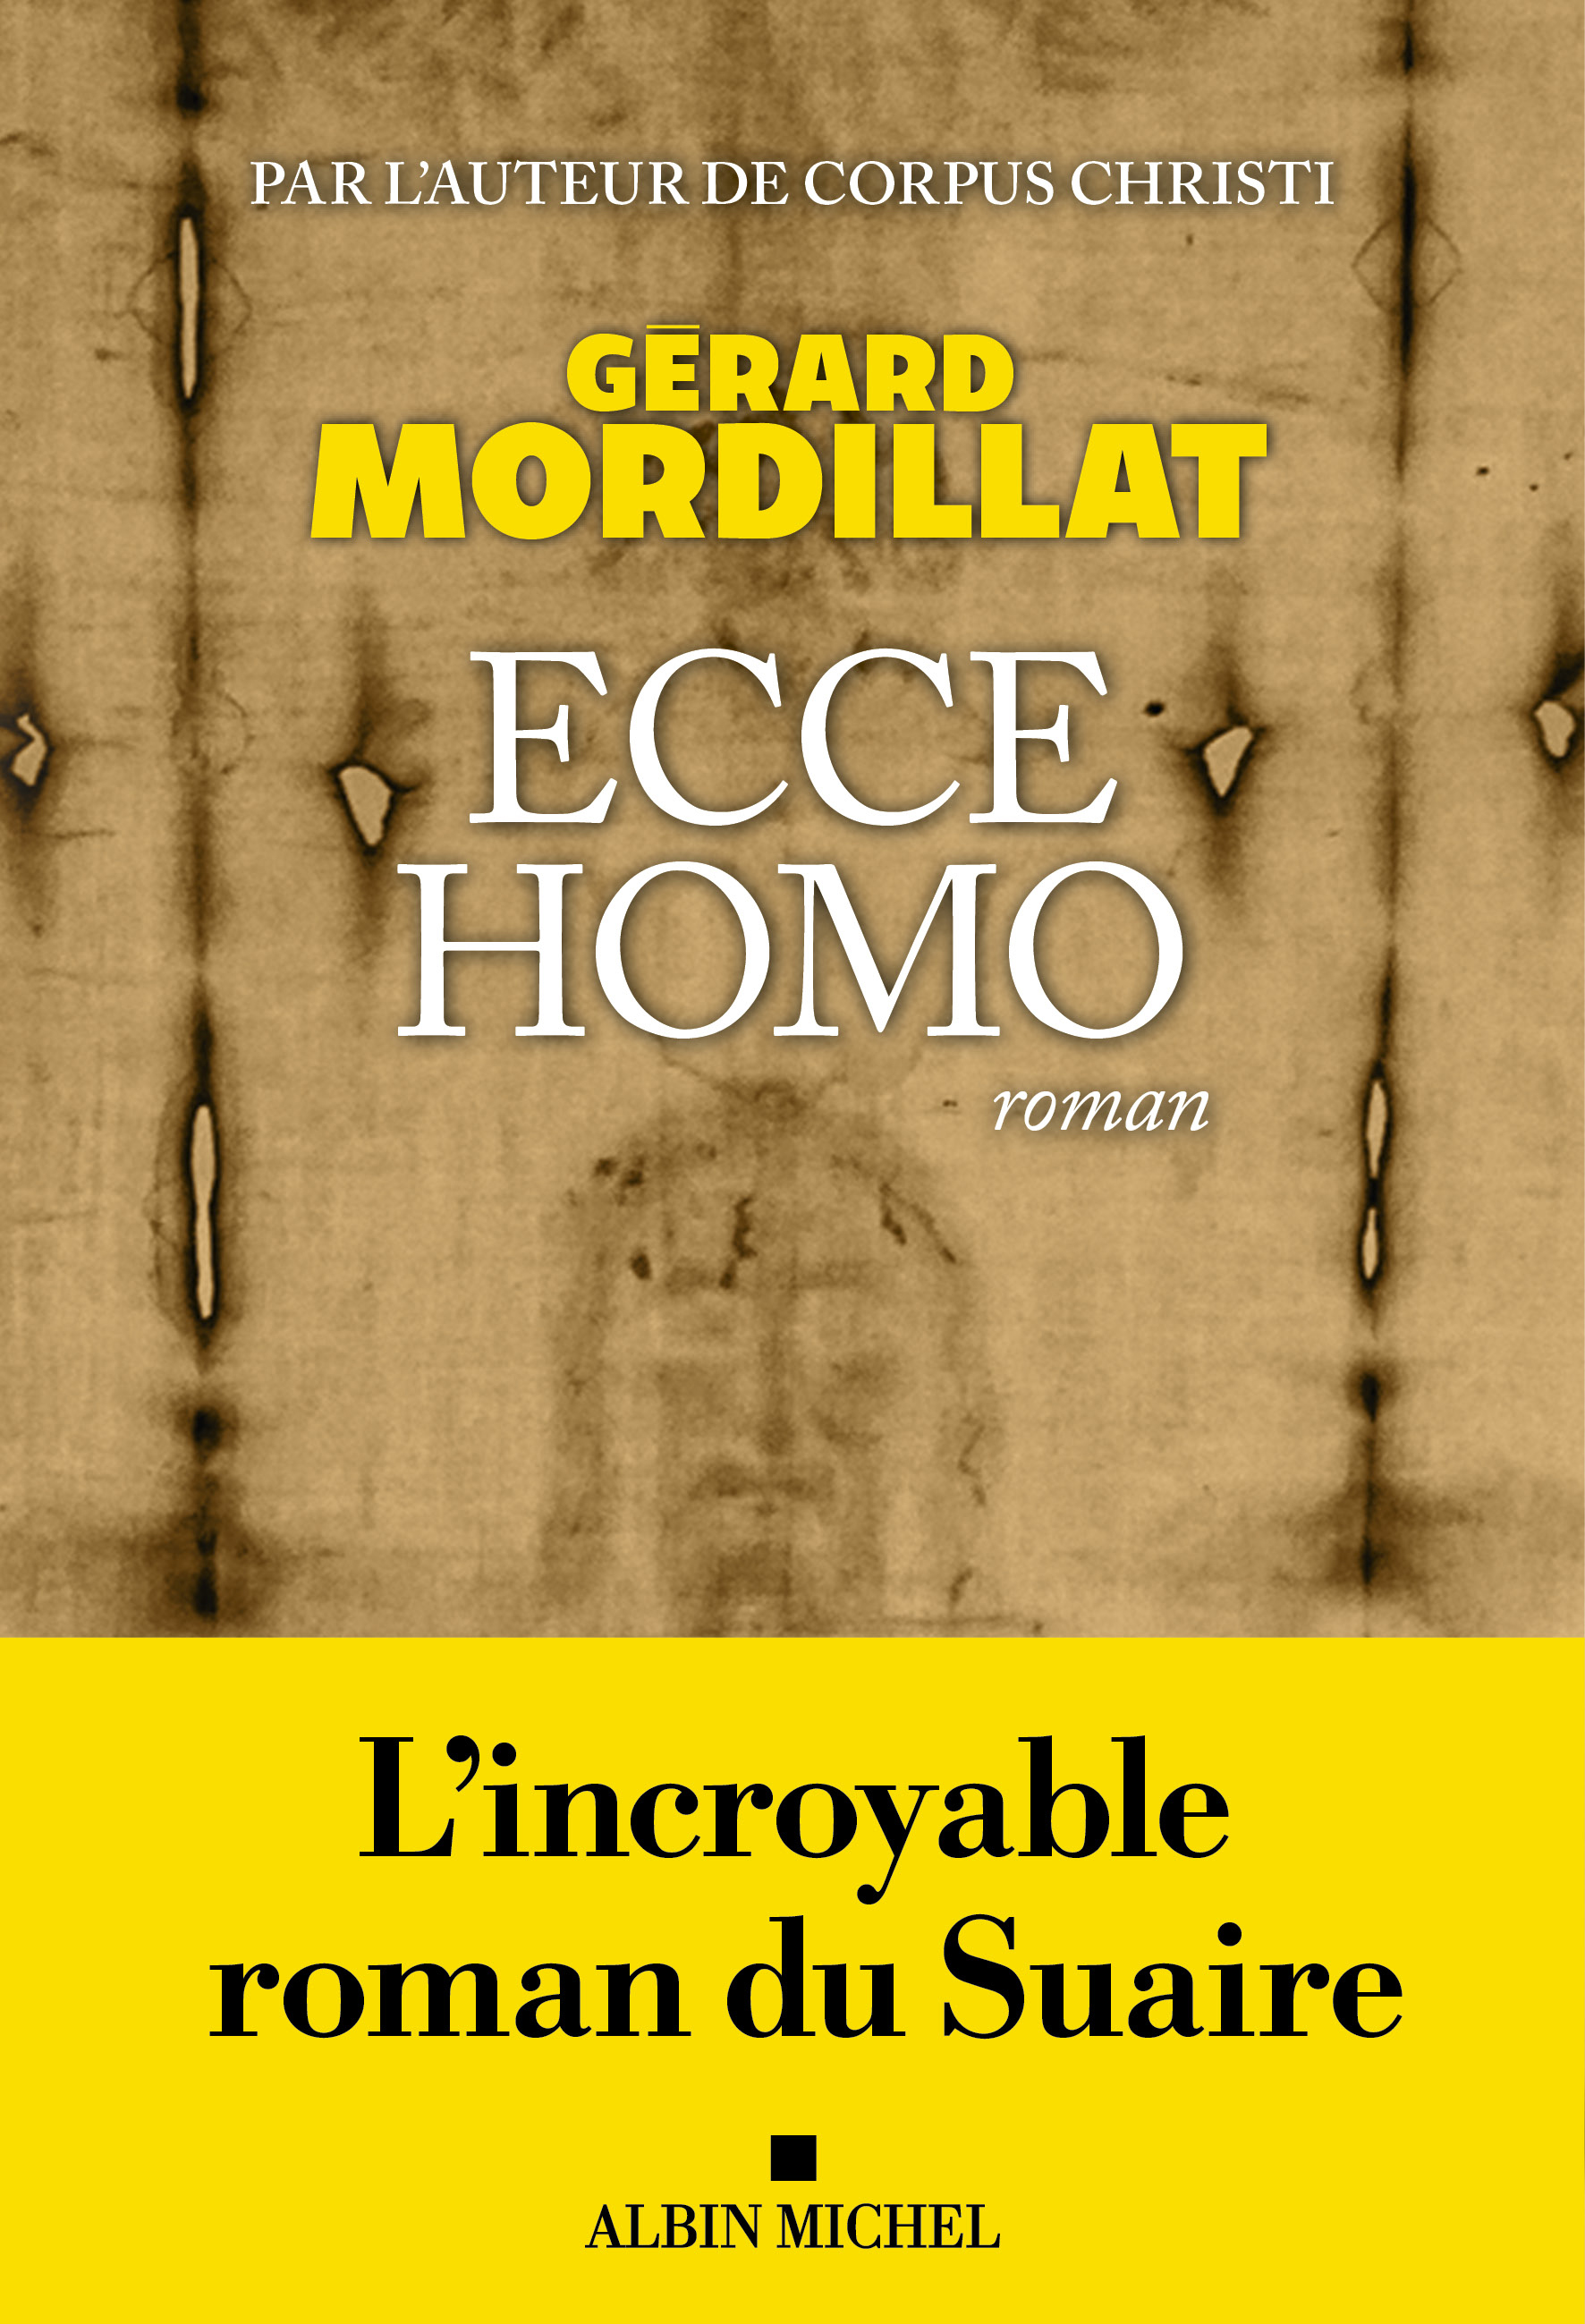 Couverture du livre Ecce homo